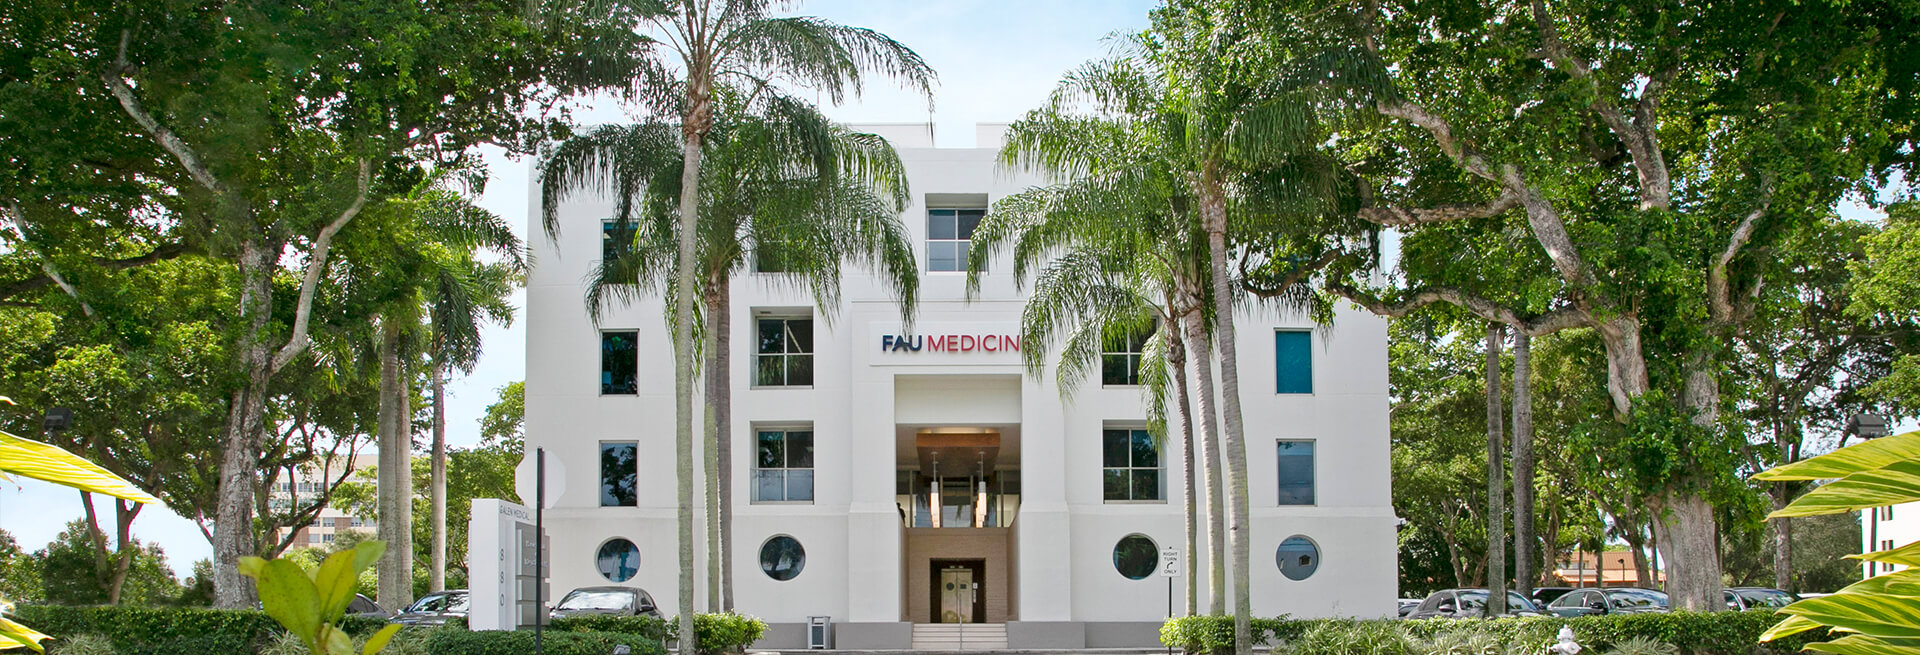 FAU Medicine building